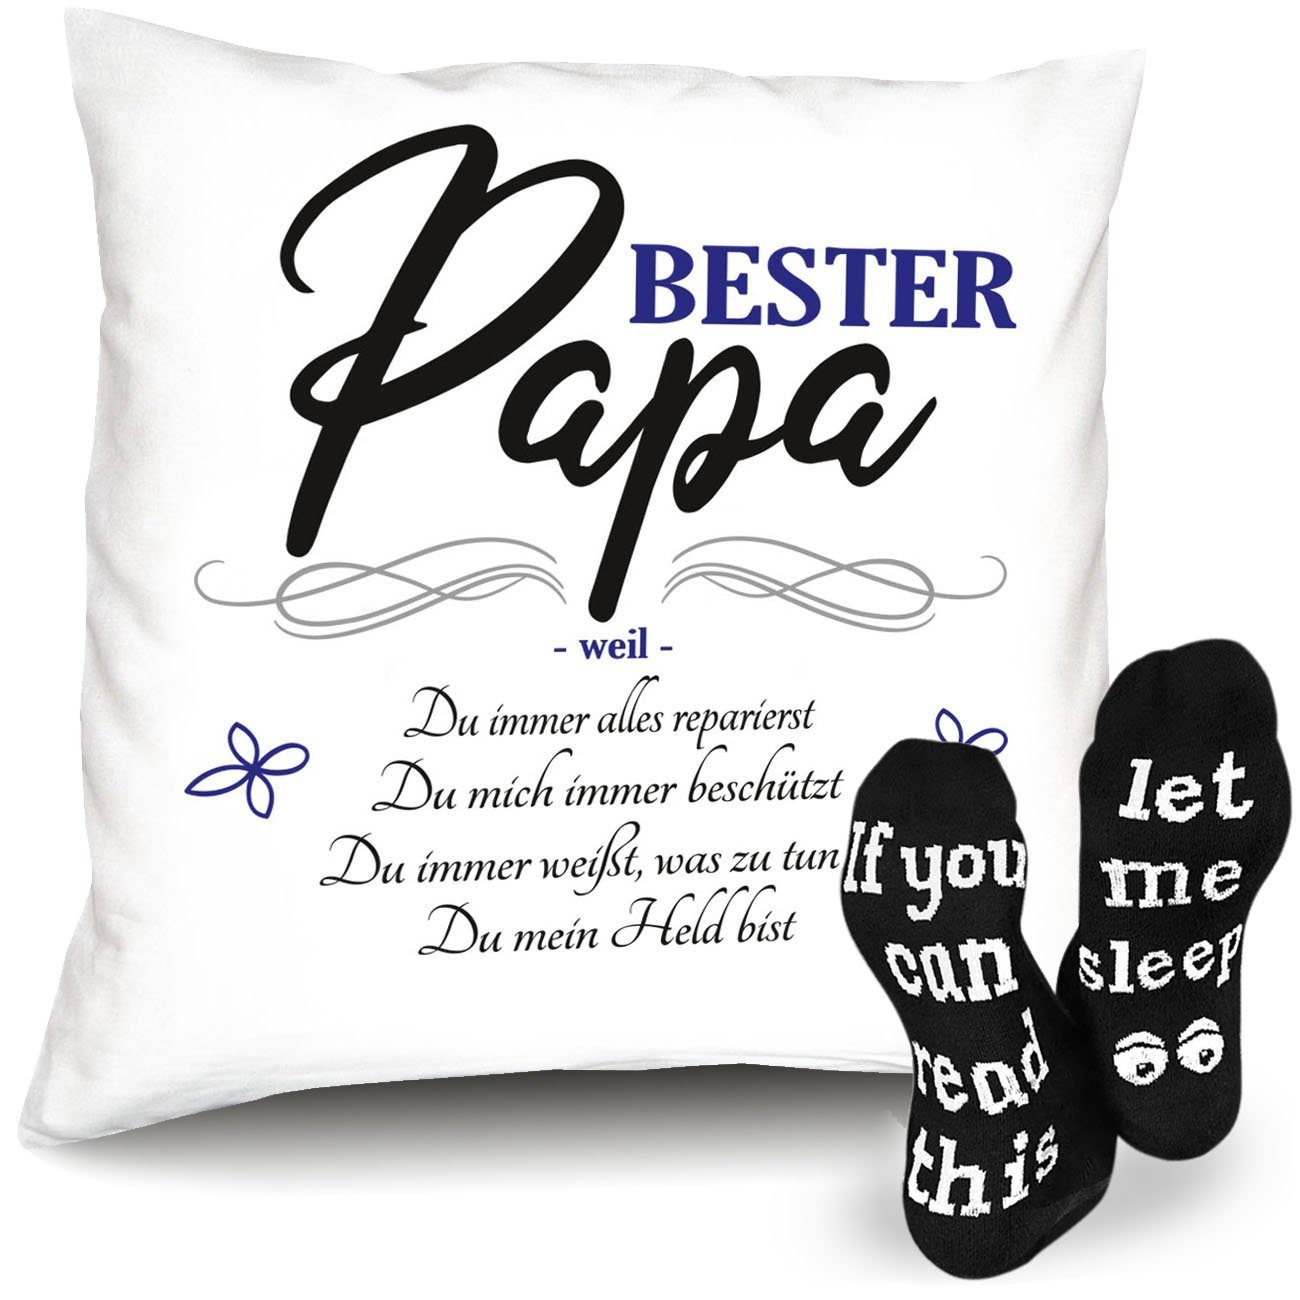 Soreso® Dekokissen Kissen + Socken Geschenk für Papa zum Geburtstag Vatertag Weihnachten, Geburtstagsgeschenk Weihnachtsgeschenk Vatertagsgeschenk